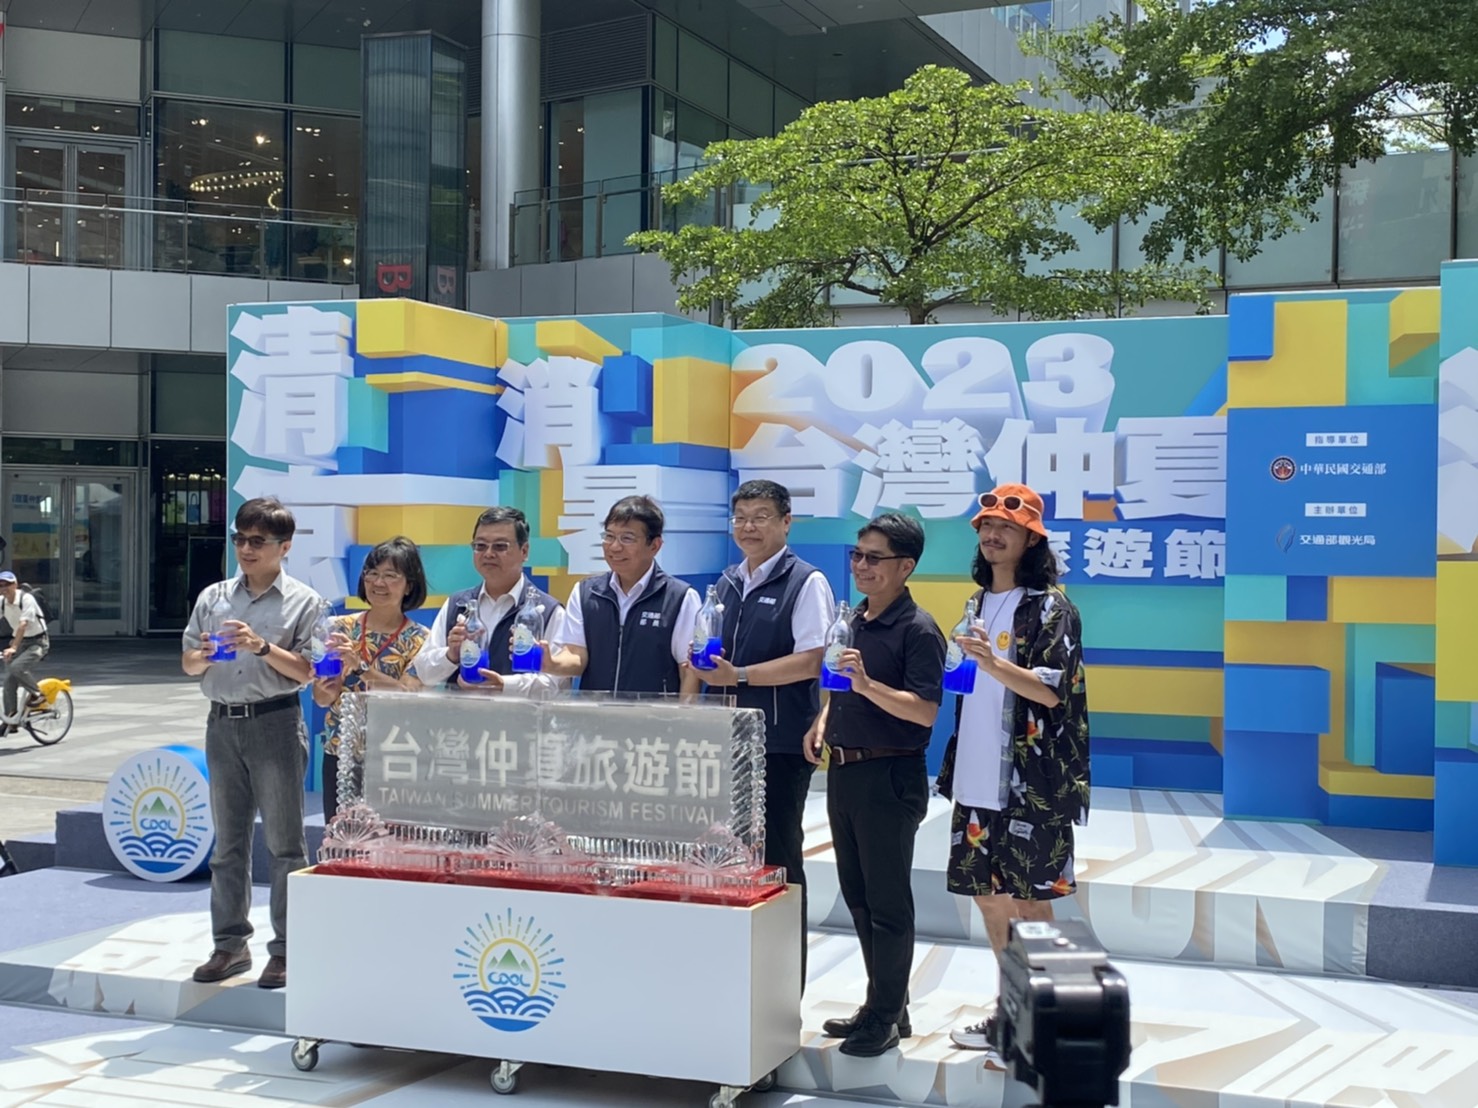 縣府參加「台灣仲夏旅遊節」記者會 行銷暑期星空季及旅遊資訊